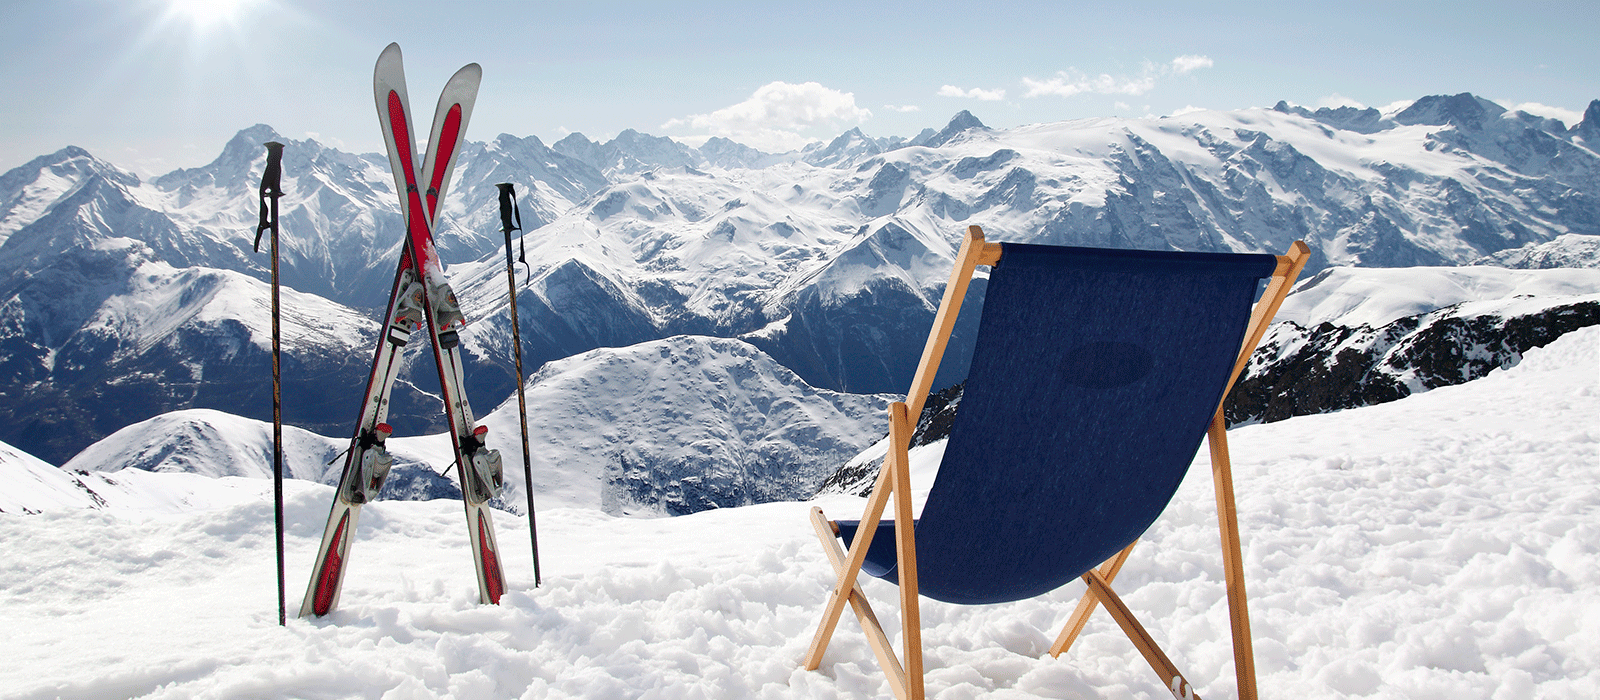 Selbstklebefolien mit Luftkanalkleber - blauer Liegestuhl mit Skiern vor schneebedeckten, sonnigen Bergen